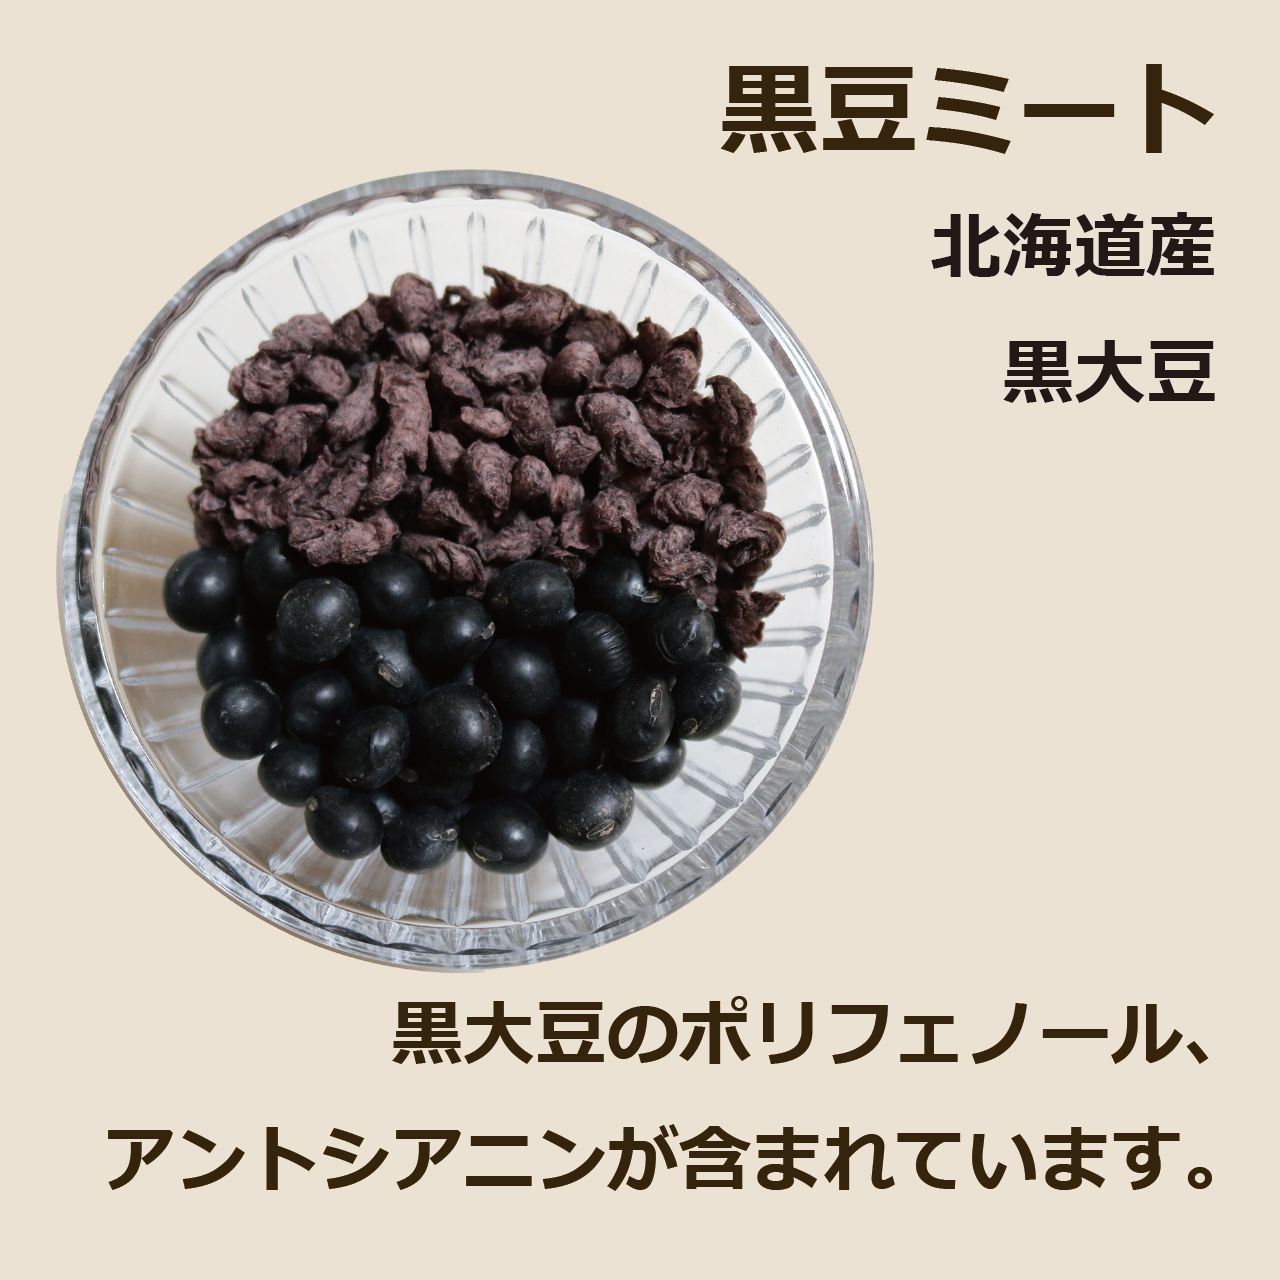 黒豆ミート 北海道産 黒大豆 黒大豆のポリフェノール、アントシアニンが含まれています。